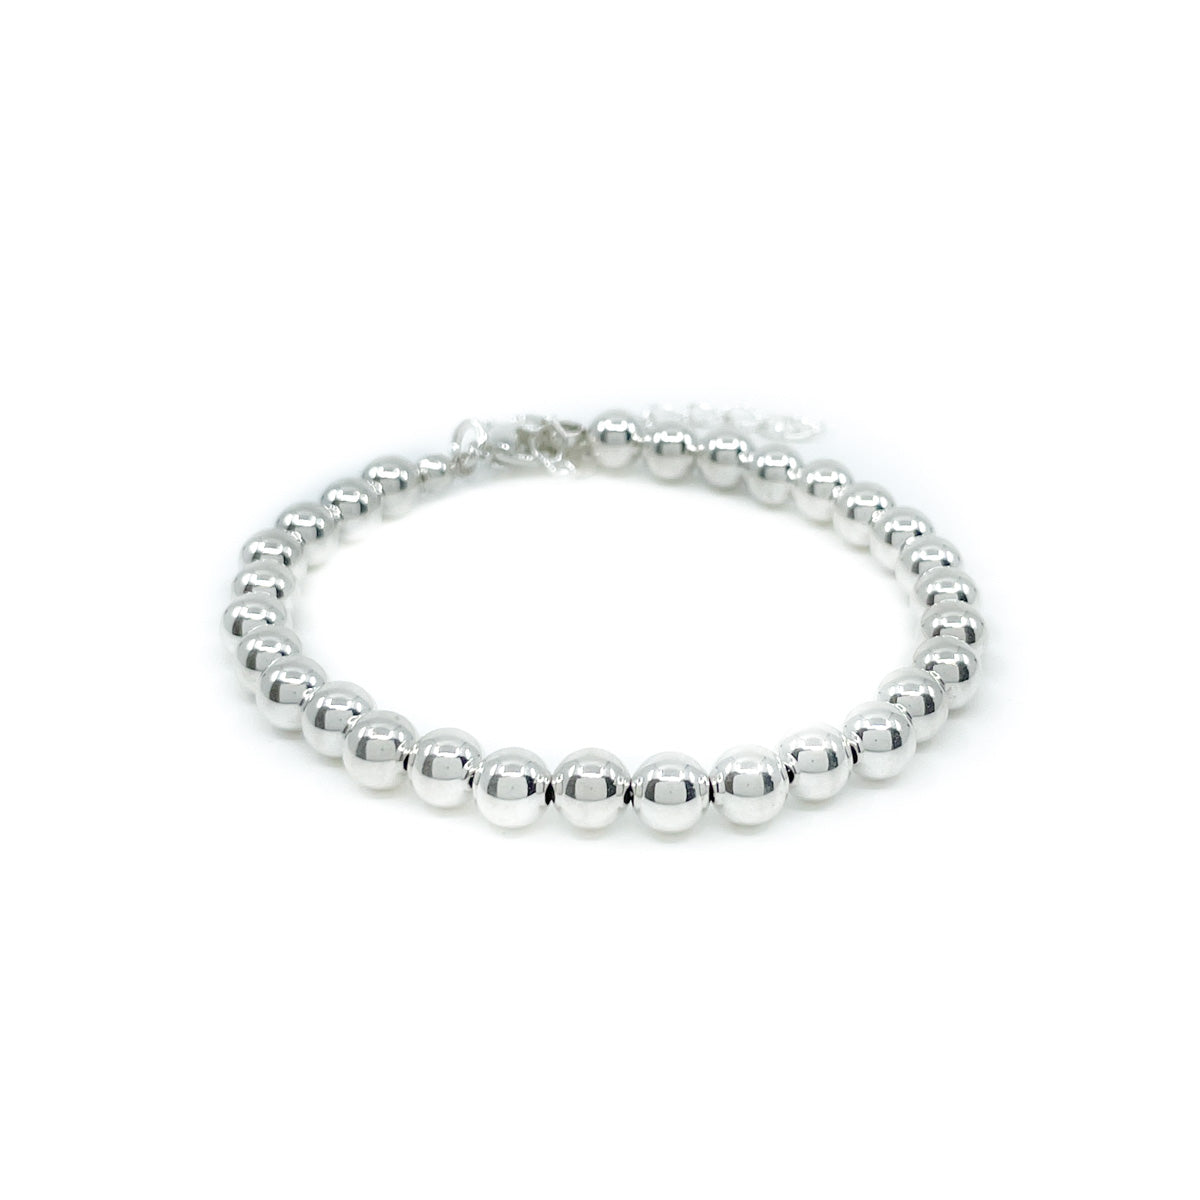 High polished sterling silver beaded bracelet